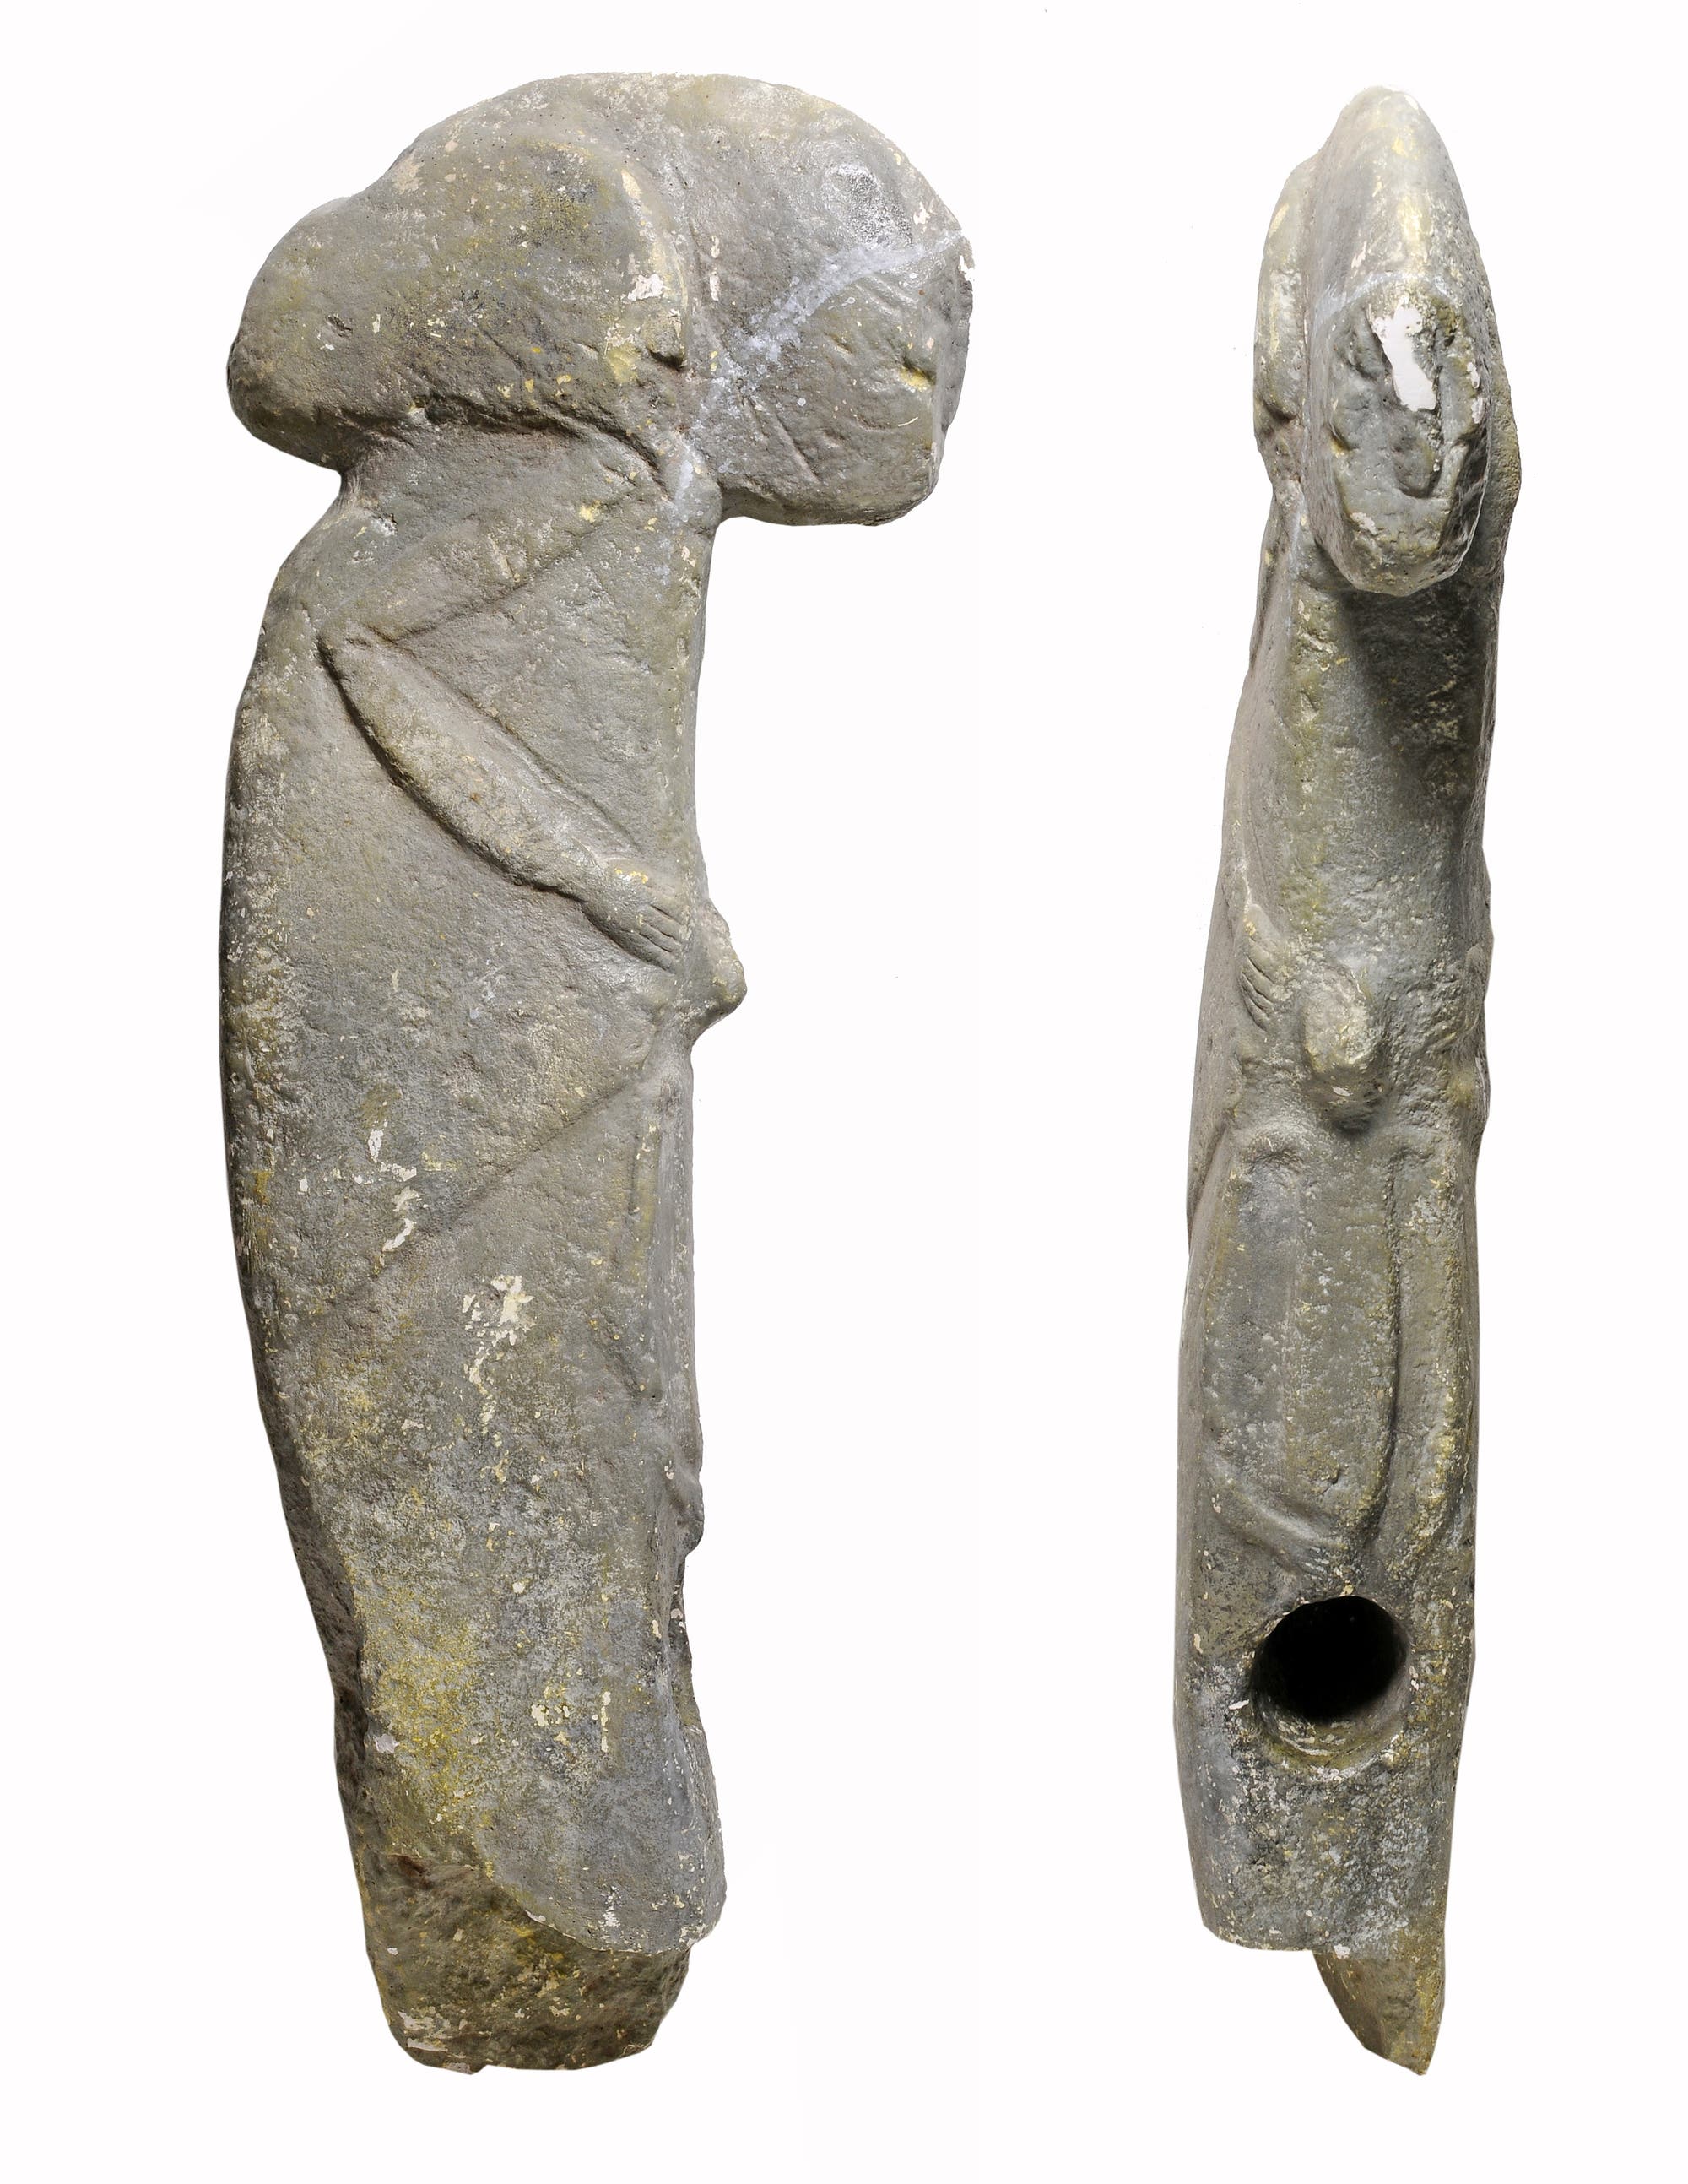 So genannte Kilisik-Skulptur aus der Südosttürkei. Die Figur ähnelt einem Hammer.